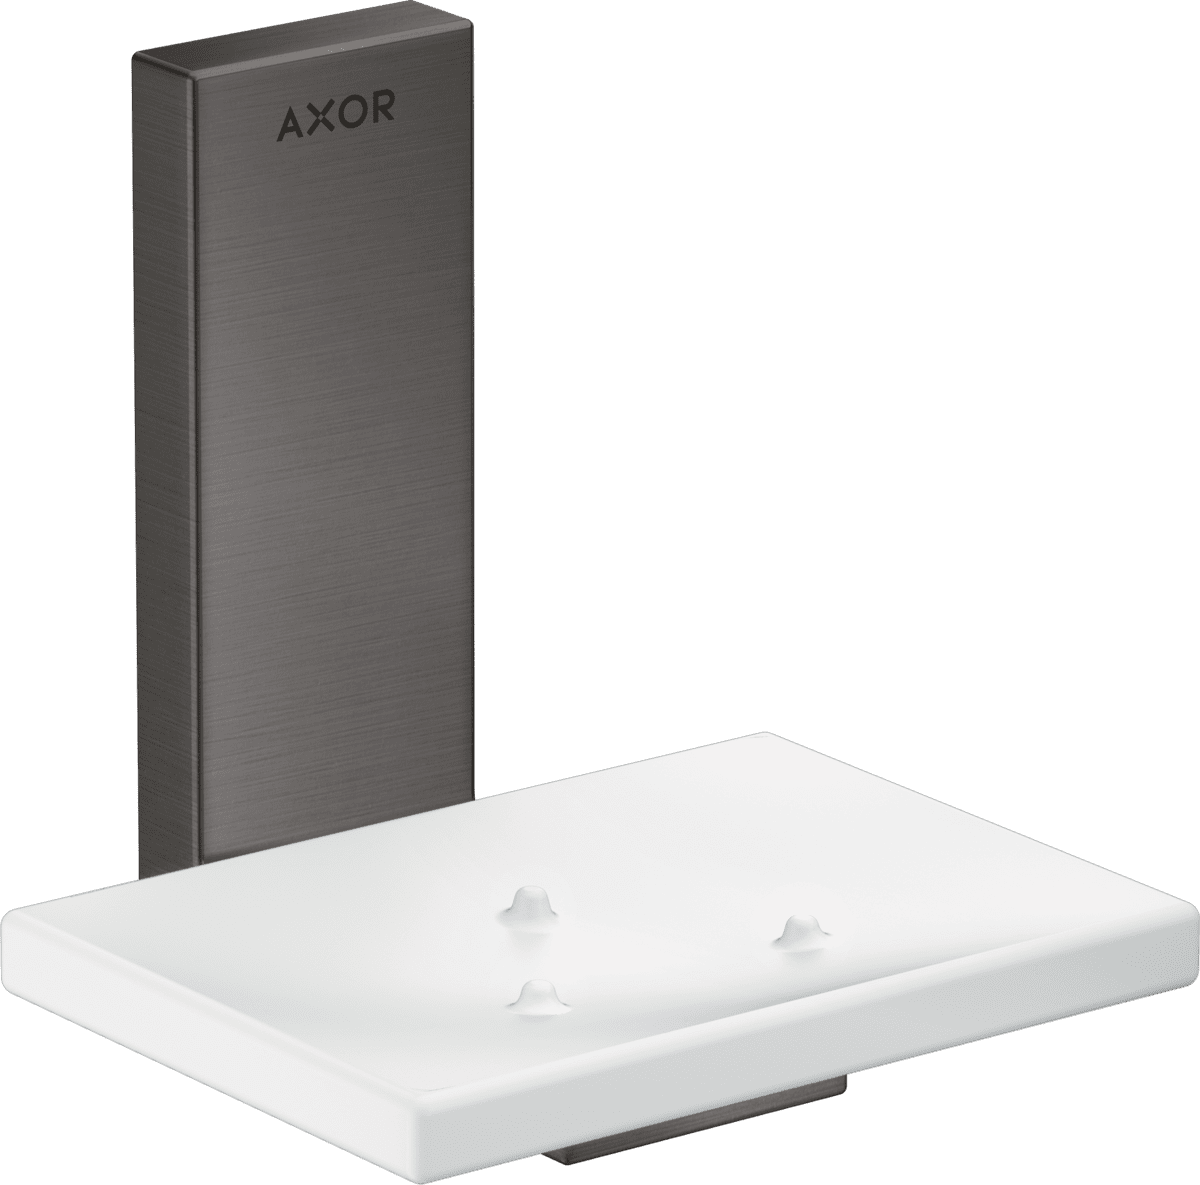 εικόνα του HANSGROHE AXOR Universal Rectangular Soap dish #42605340 - Brushed Black Chrome